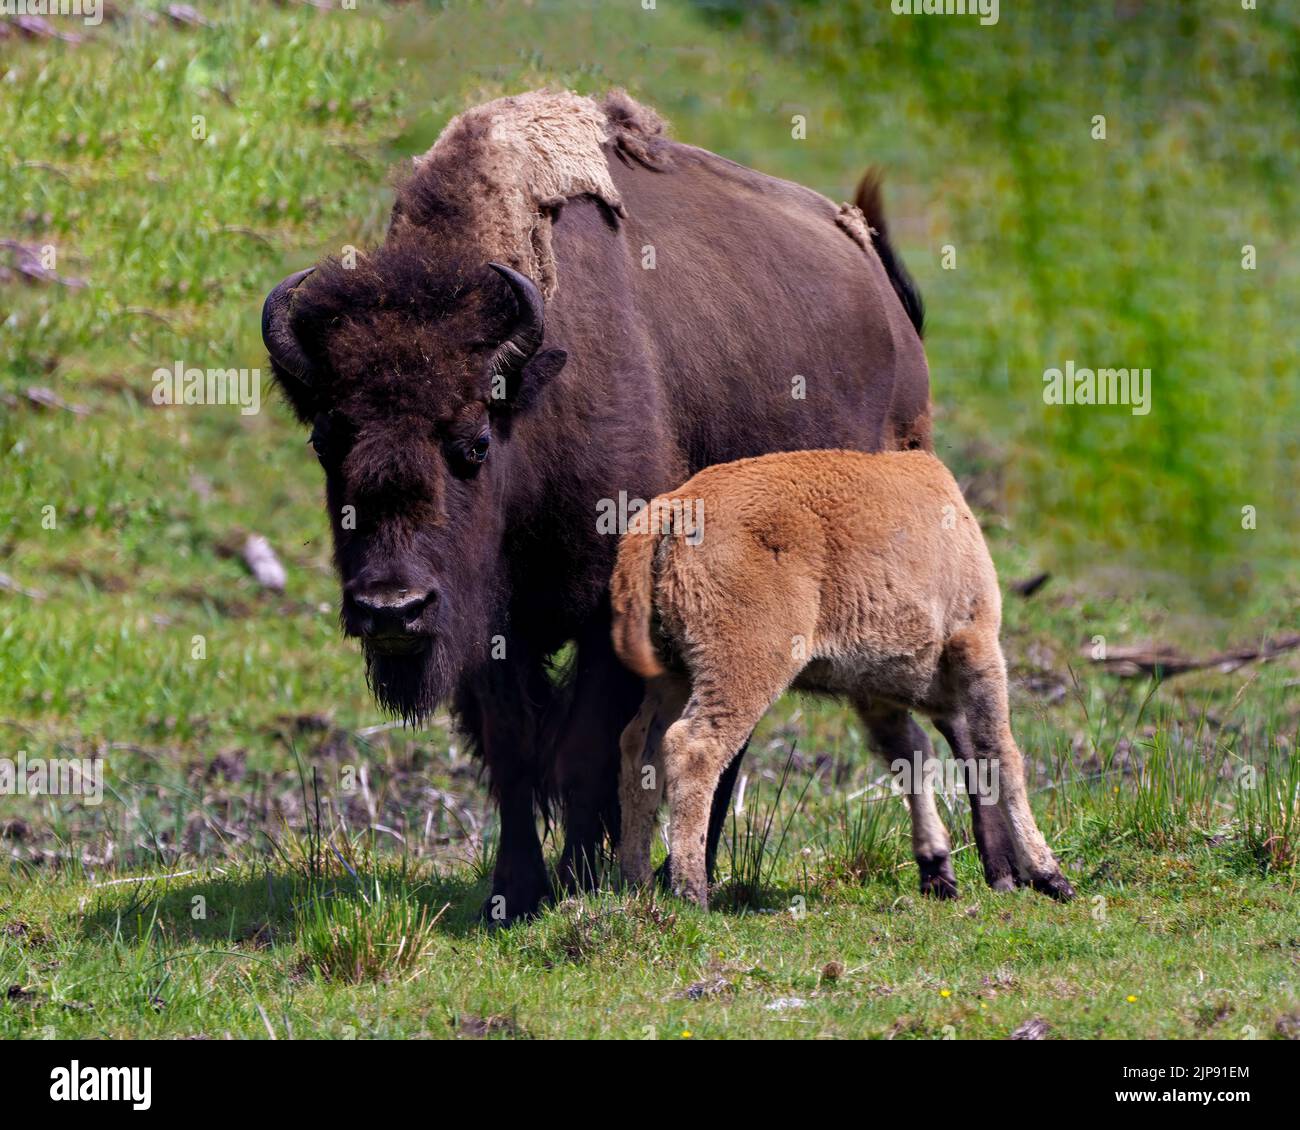 Bison-Erwachsener füttert das Baby Bison auf dem Feld in ihrer Umgebung und Umgebung. Junges Tier. Büffelbild. Stockfoto